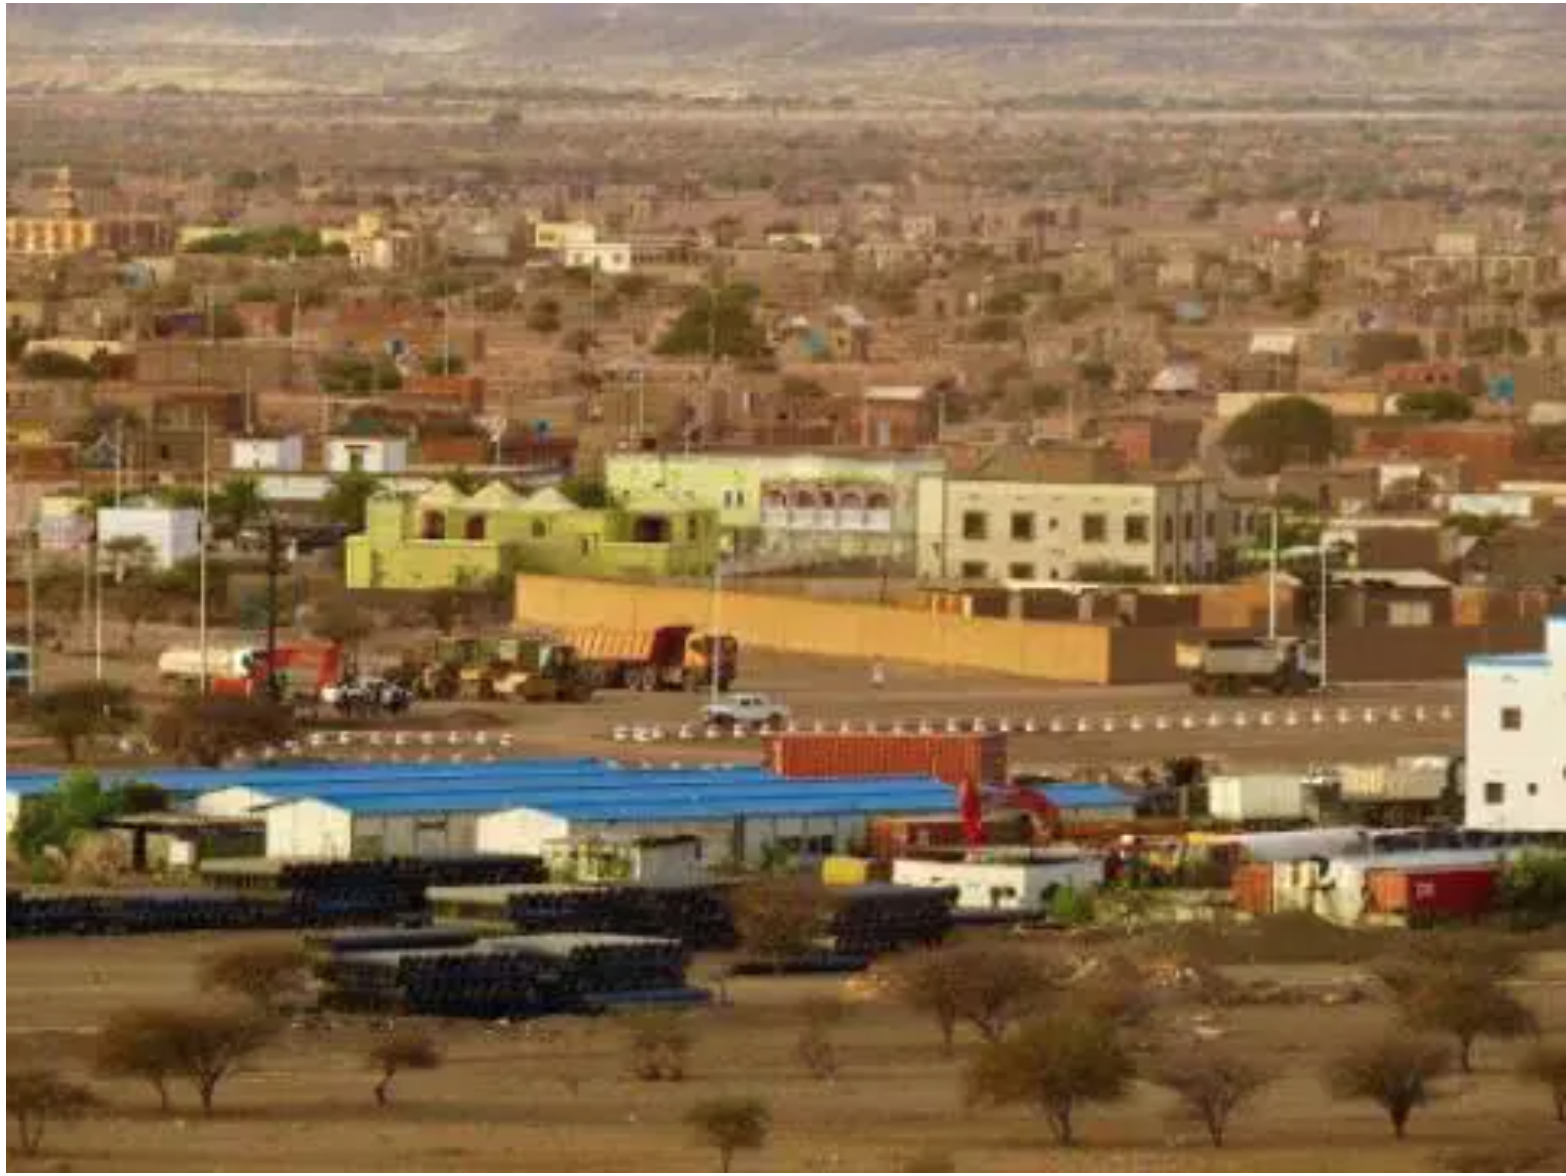 Mauritanie-France : signature d’un accord pour appuyer le développement de la wilaya du Hodh Chargui